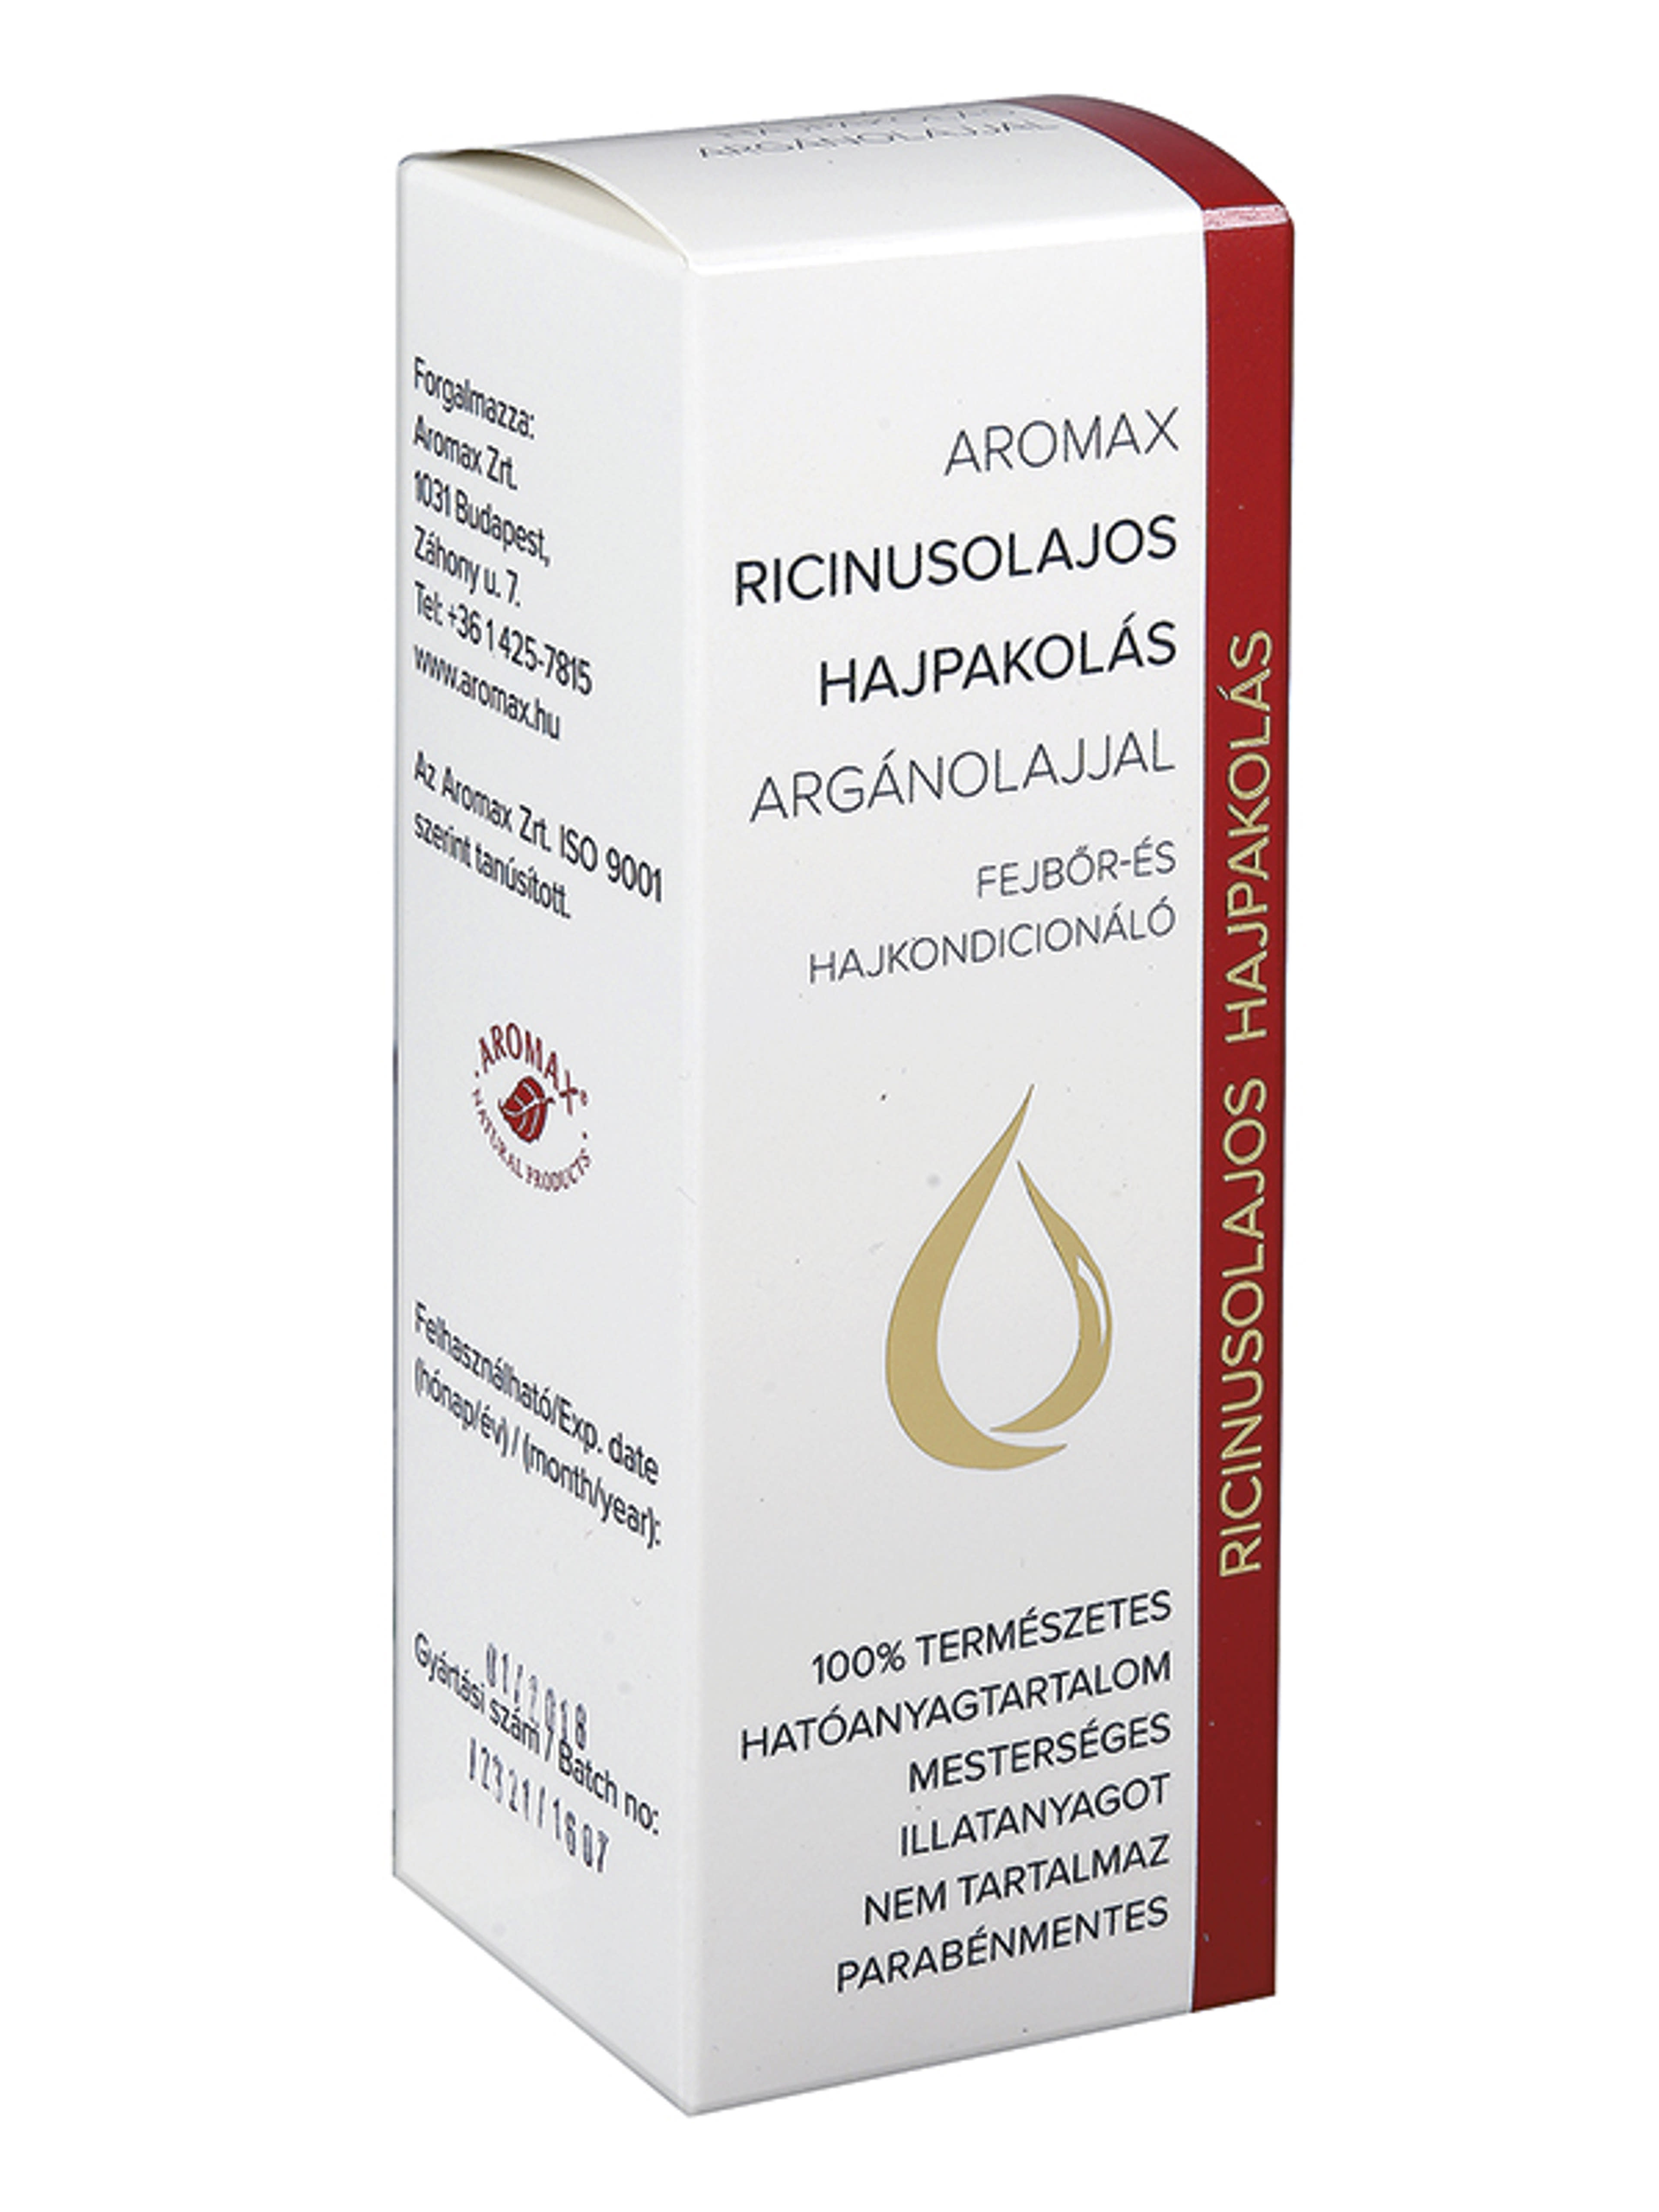 Aromax Ricinusolajos Argánolajjal hajpakolás - 100 ml-1